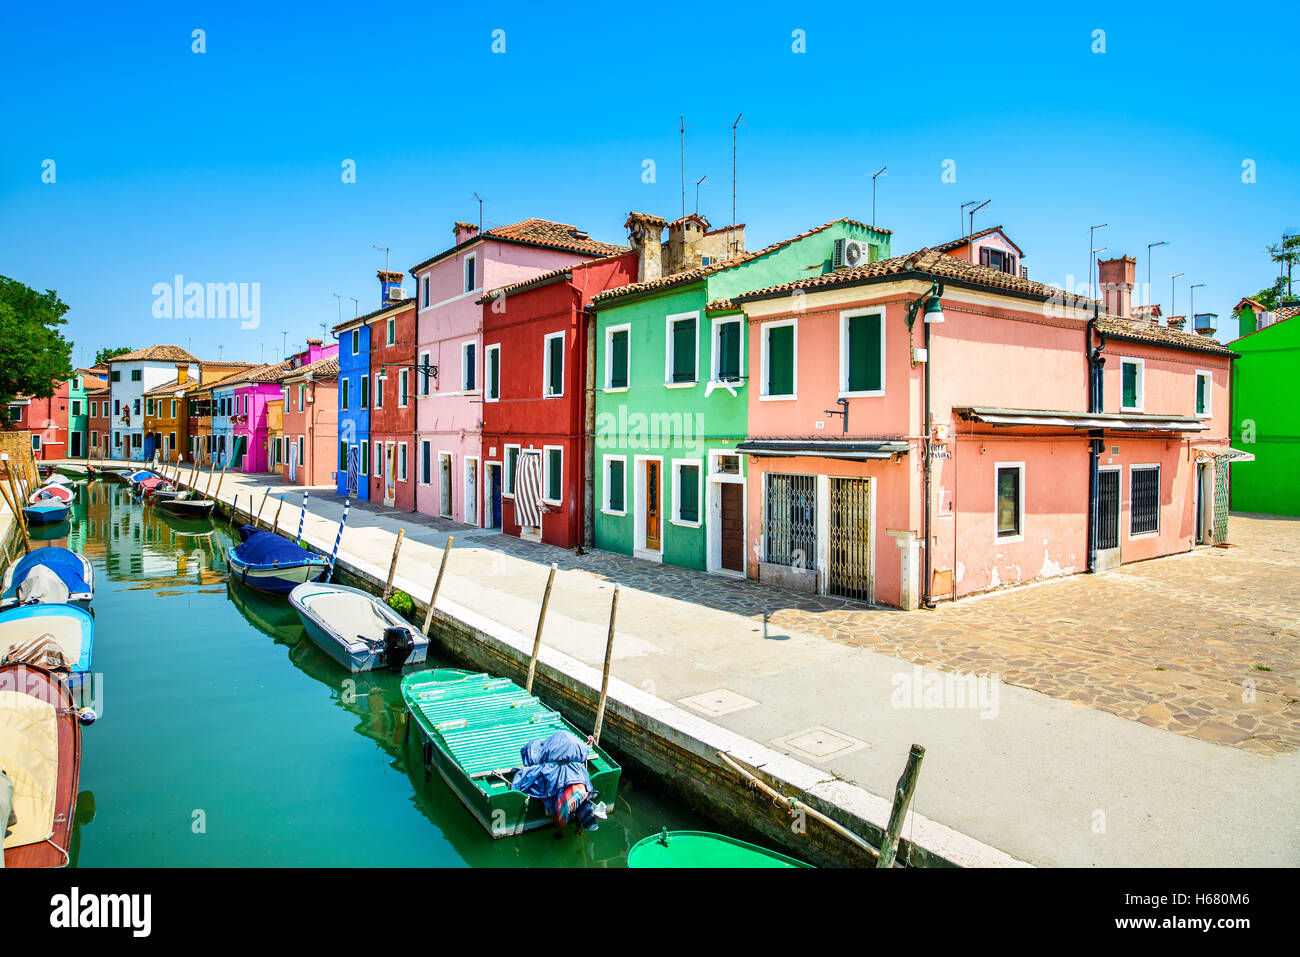 Vue de Venise, Burano island canal, maisons colorées et des bateaux, de l'Italie. Photos à longue exposition Banque D'Images